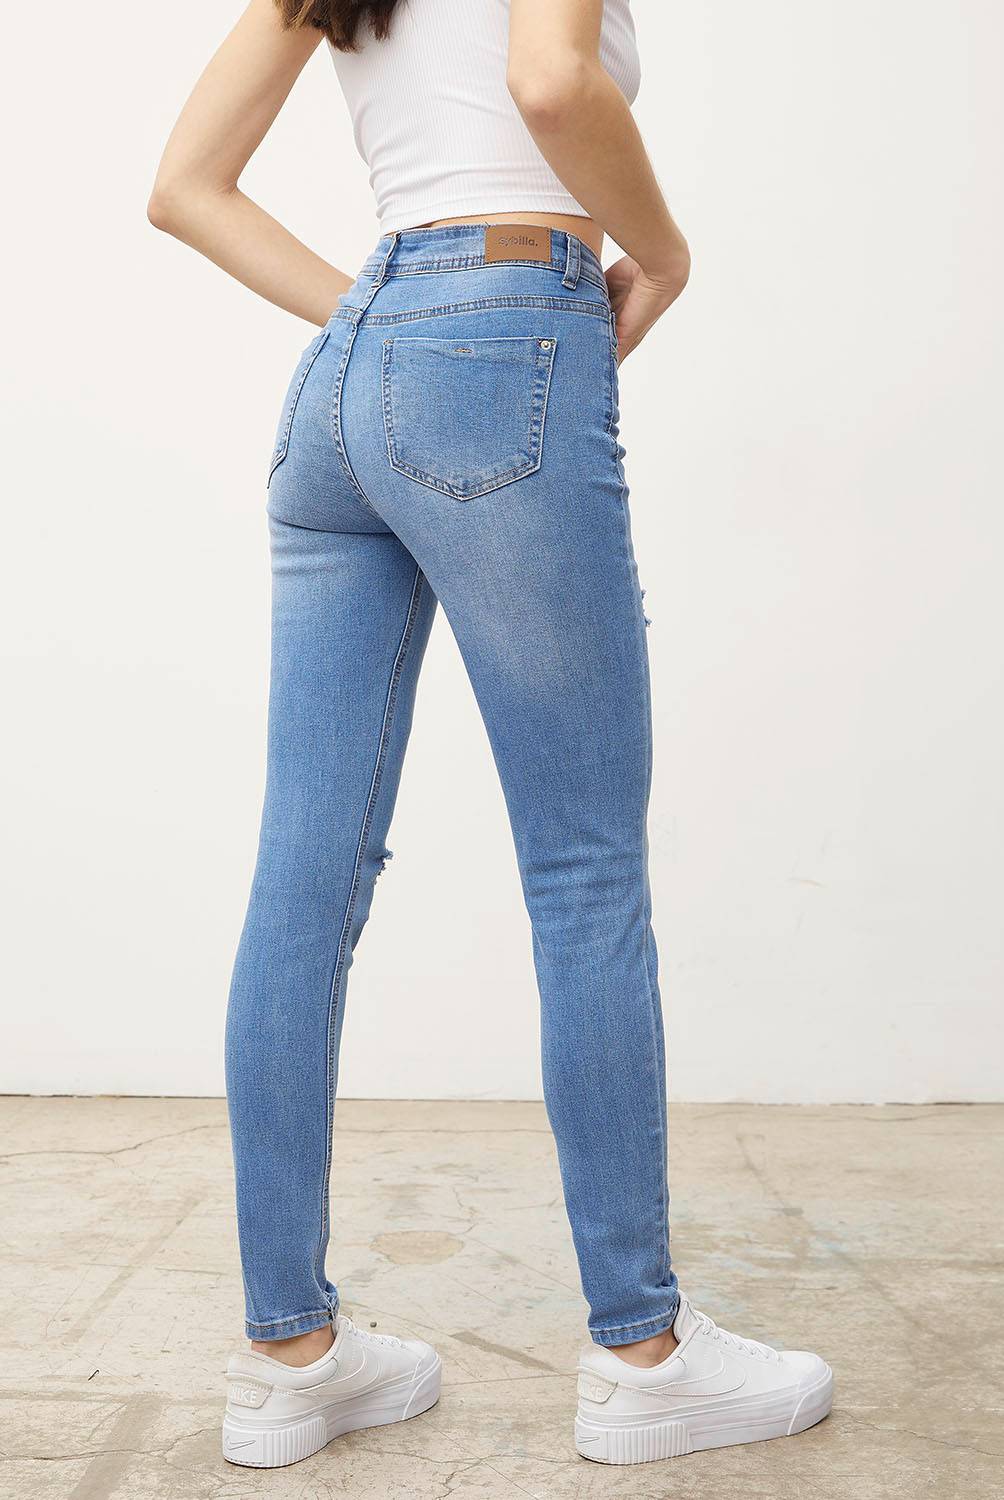 SYBILLA - Jeans Skinny Sophie Tiro Alto Mujer Sybilla